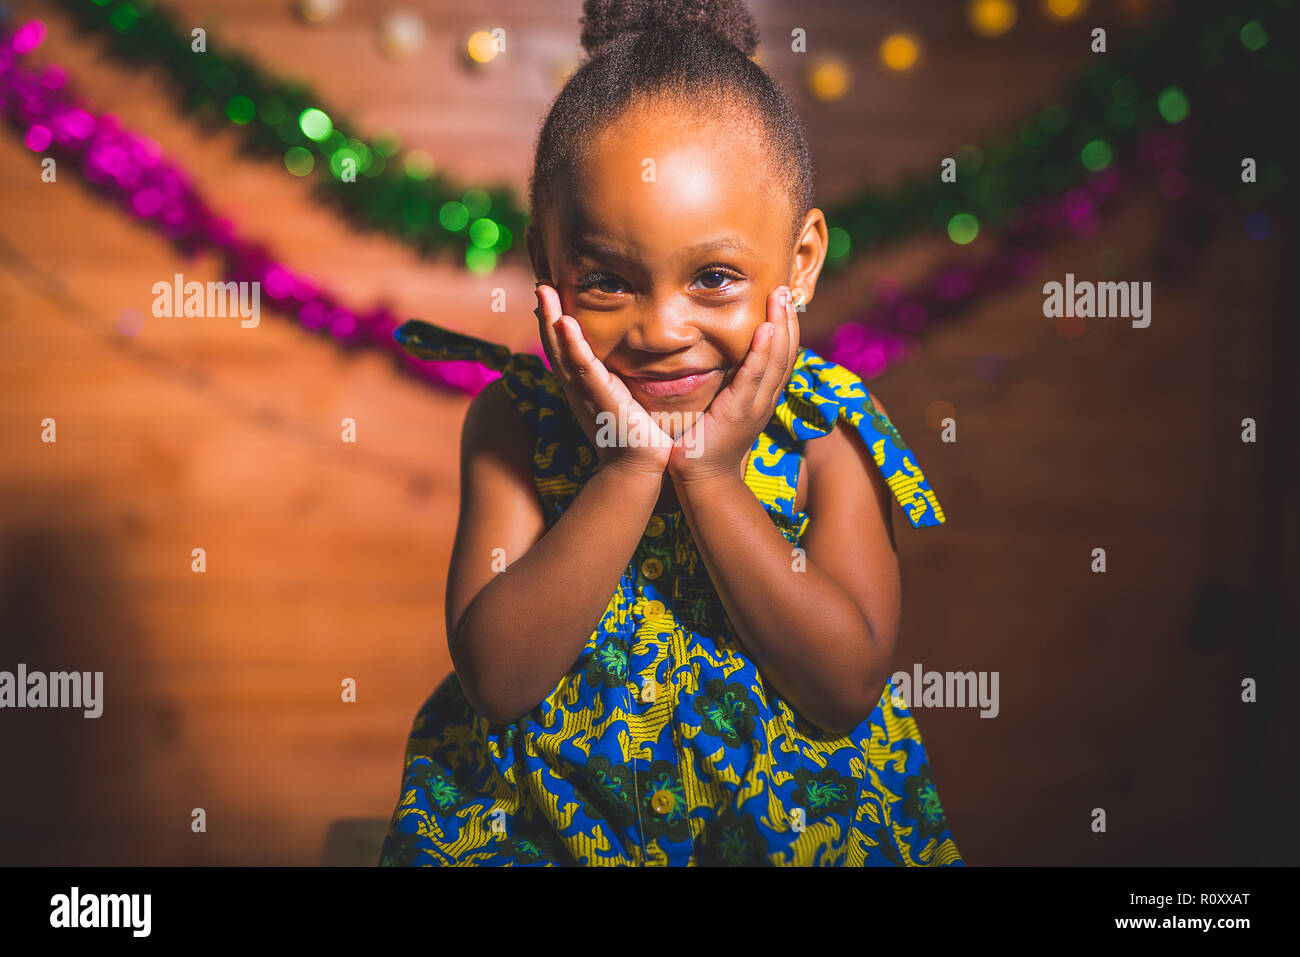 Little girl celebrating Christmas Stock Photo